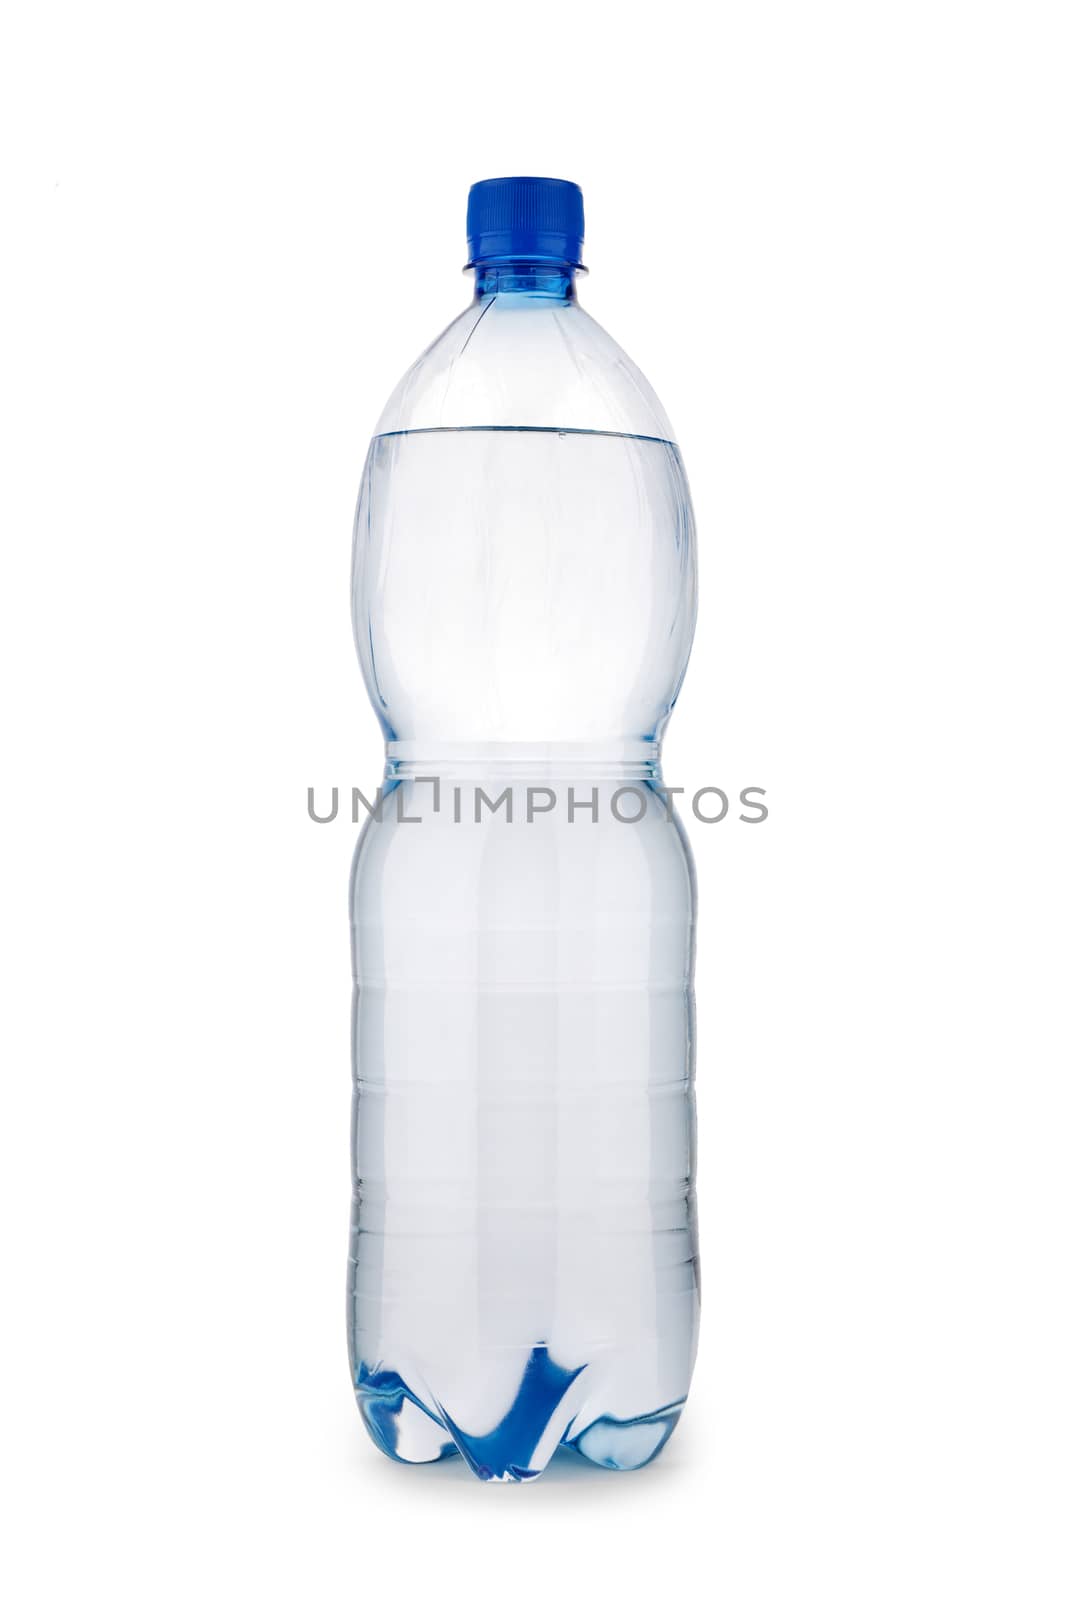 single blue bottle isolated